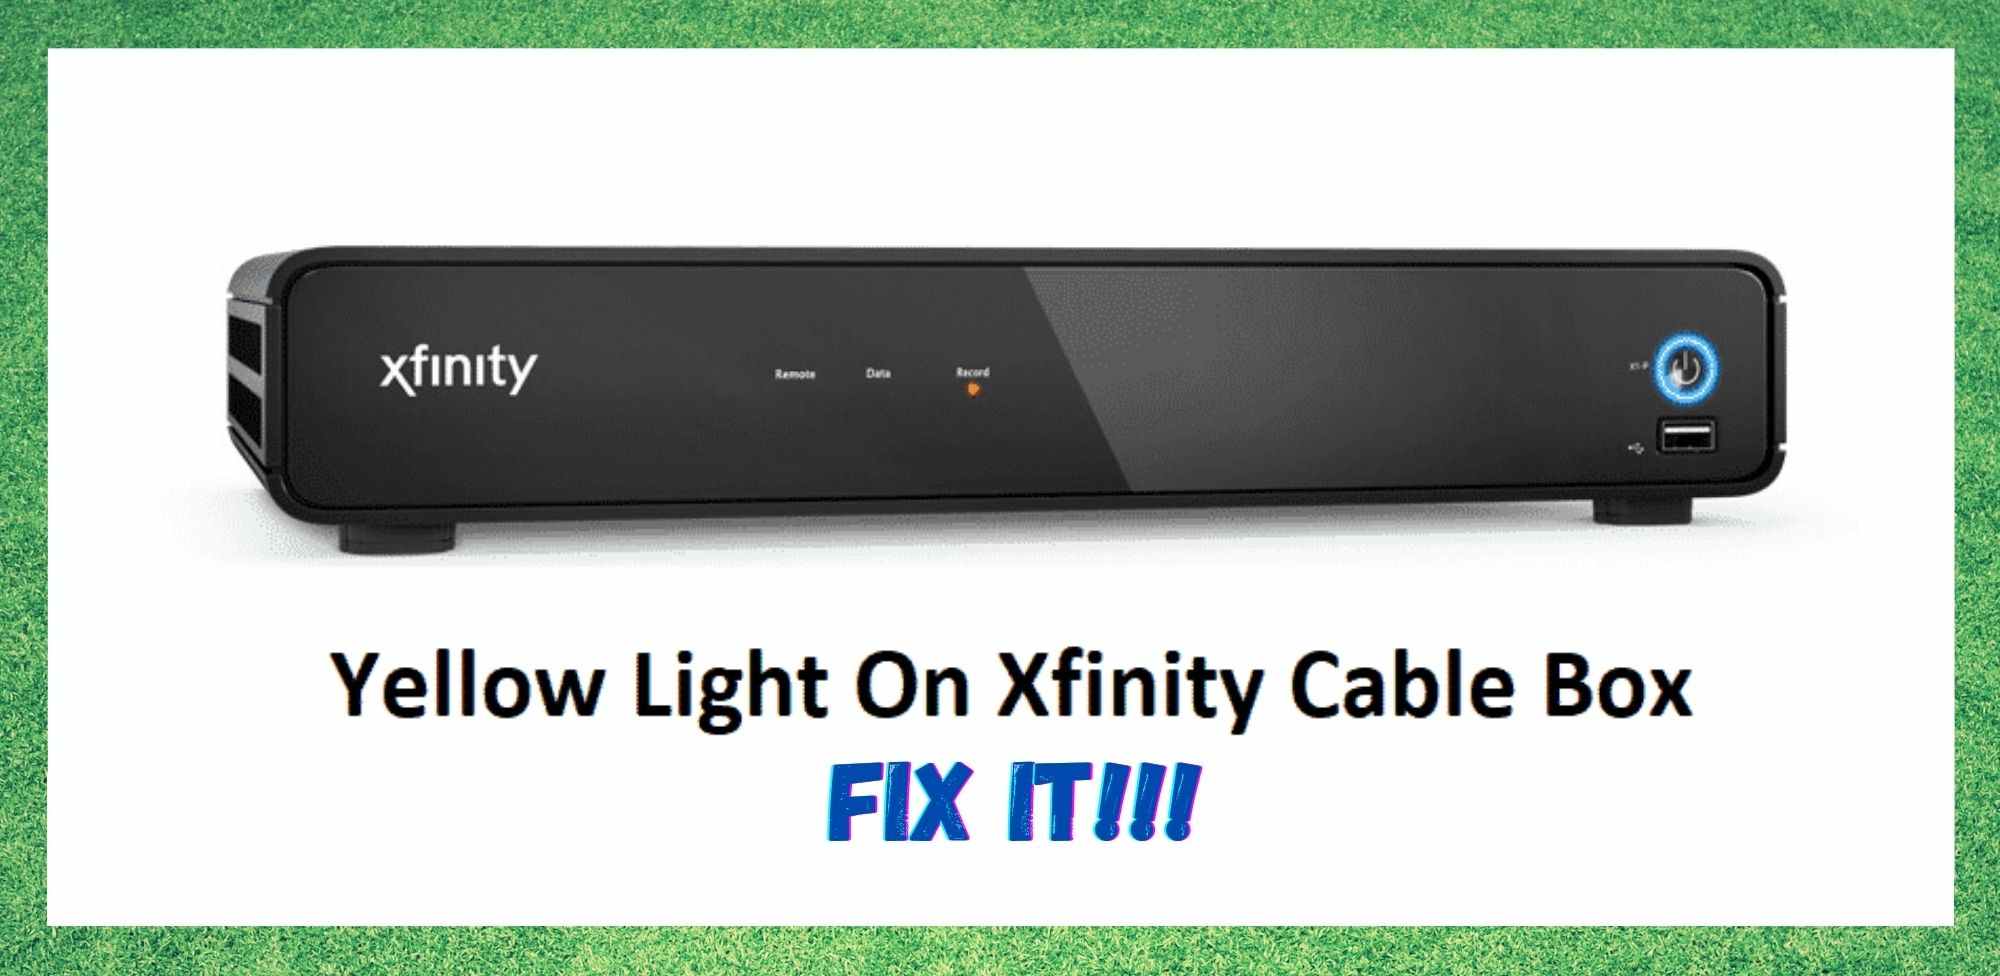 5 طرق لإصلاح الضوء الأصفر على صندوق كابل Xfinity